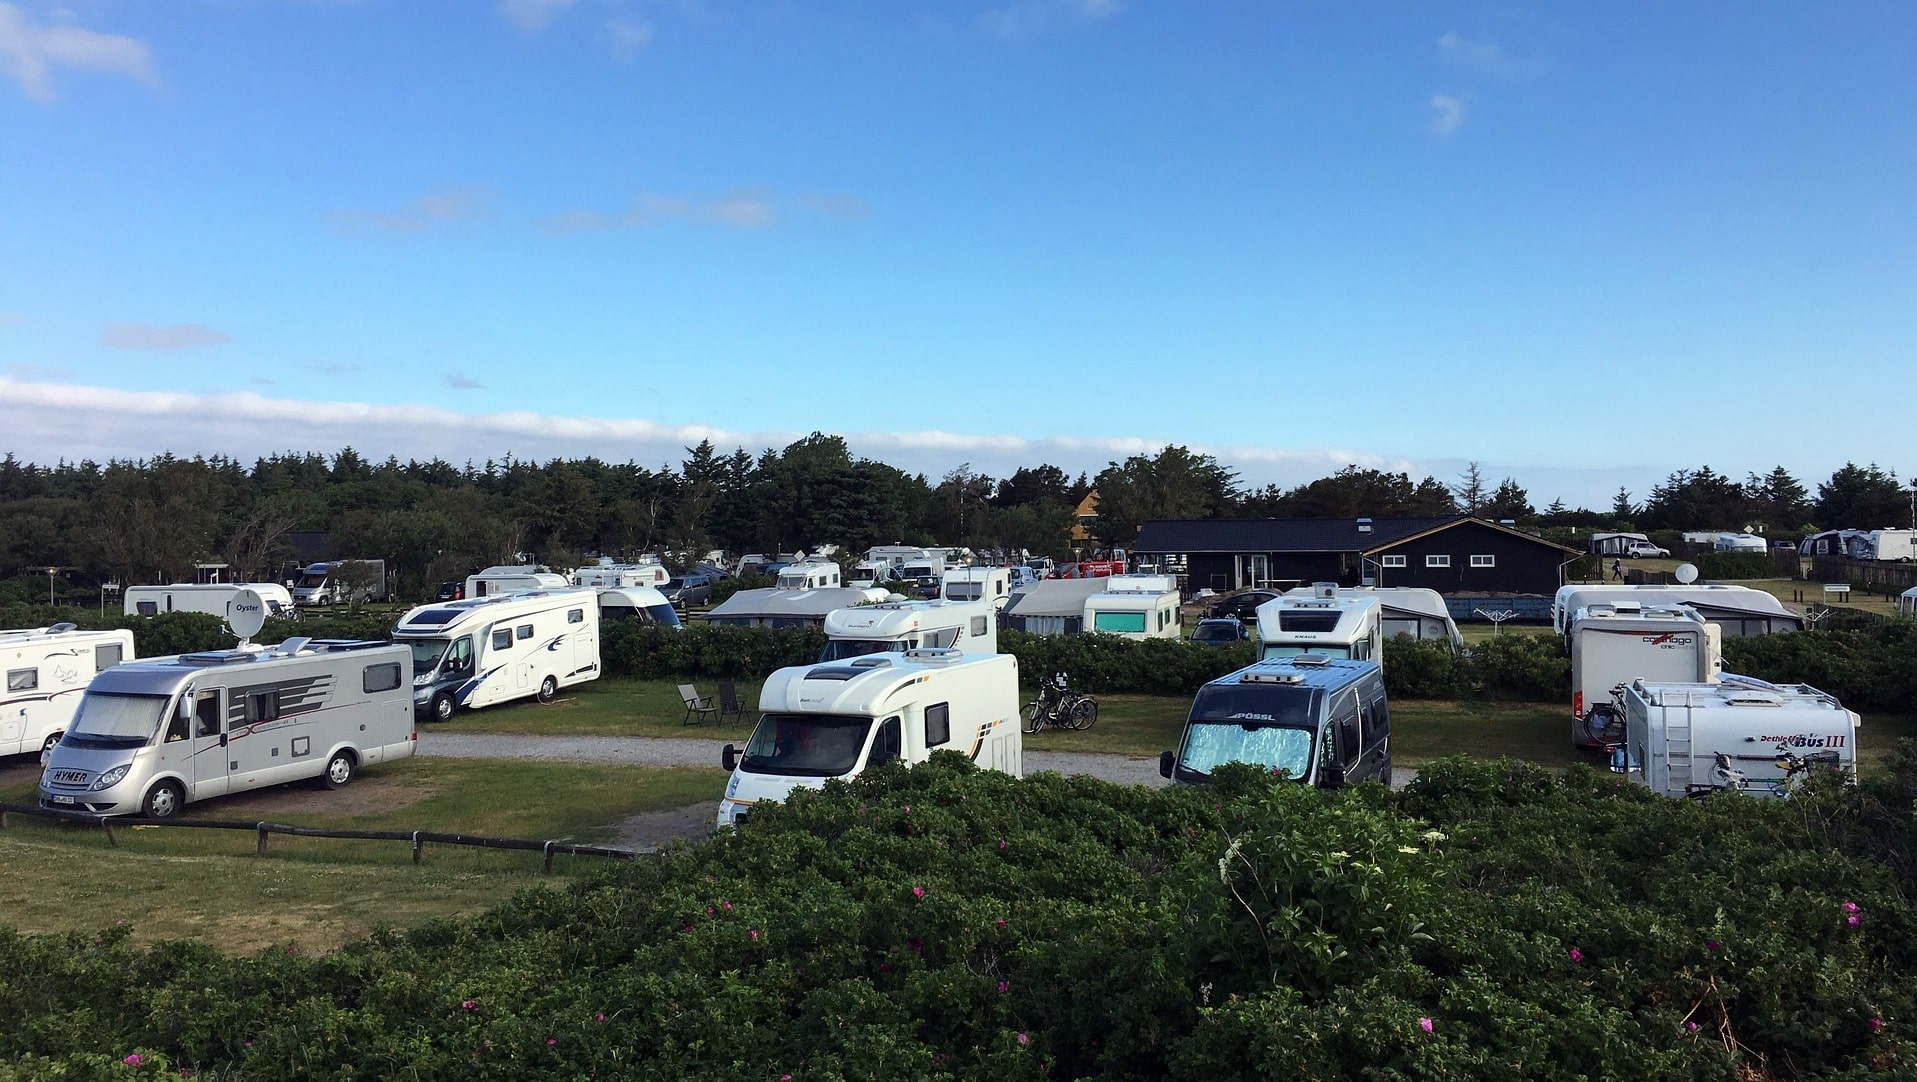 Einen Campingplatz in Holland sollte man unbedingt vorab reservieren